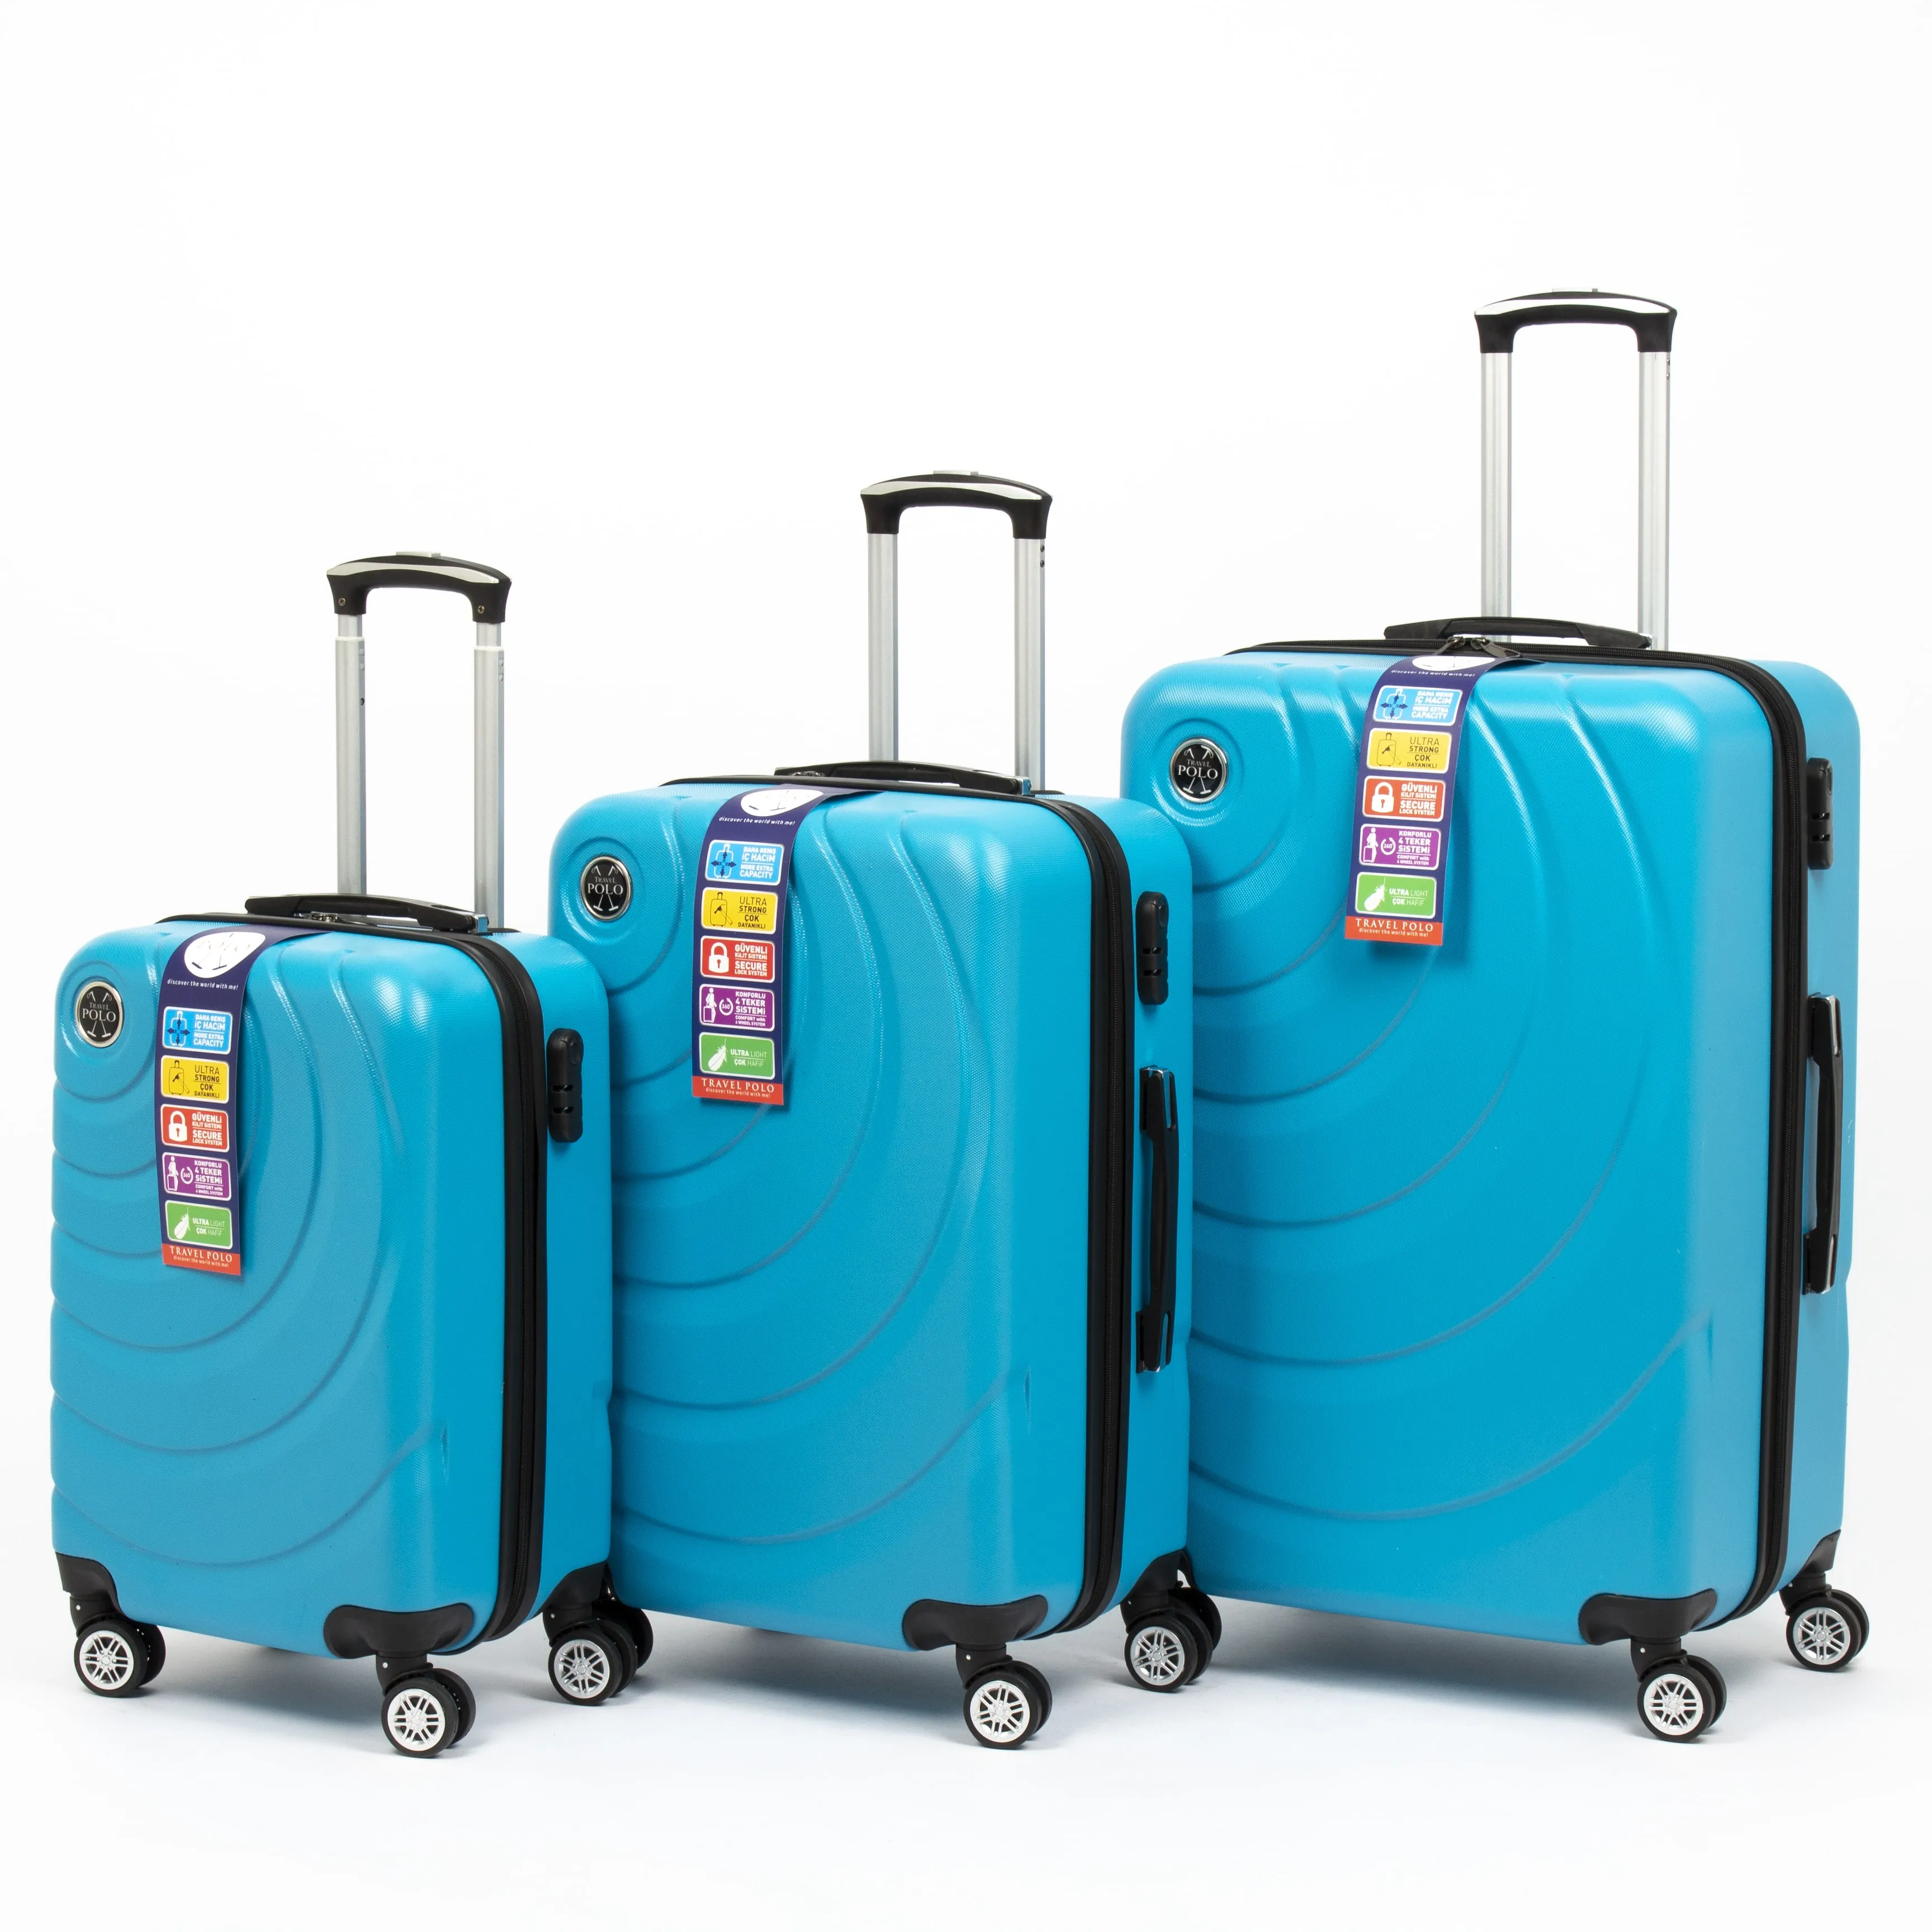 Toptan ABS valizler türk dayanıklı yüksek kaliteli seyahat çantaları setleri tekerlekli çantalar bavul çanta setleri türkiye'de yapılan